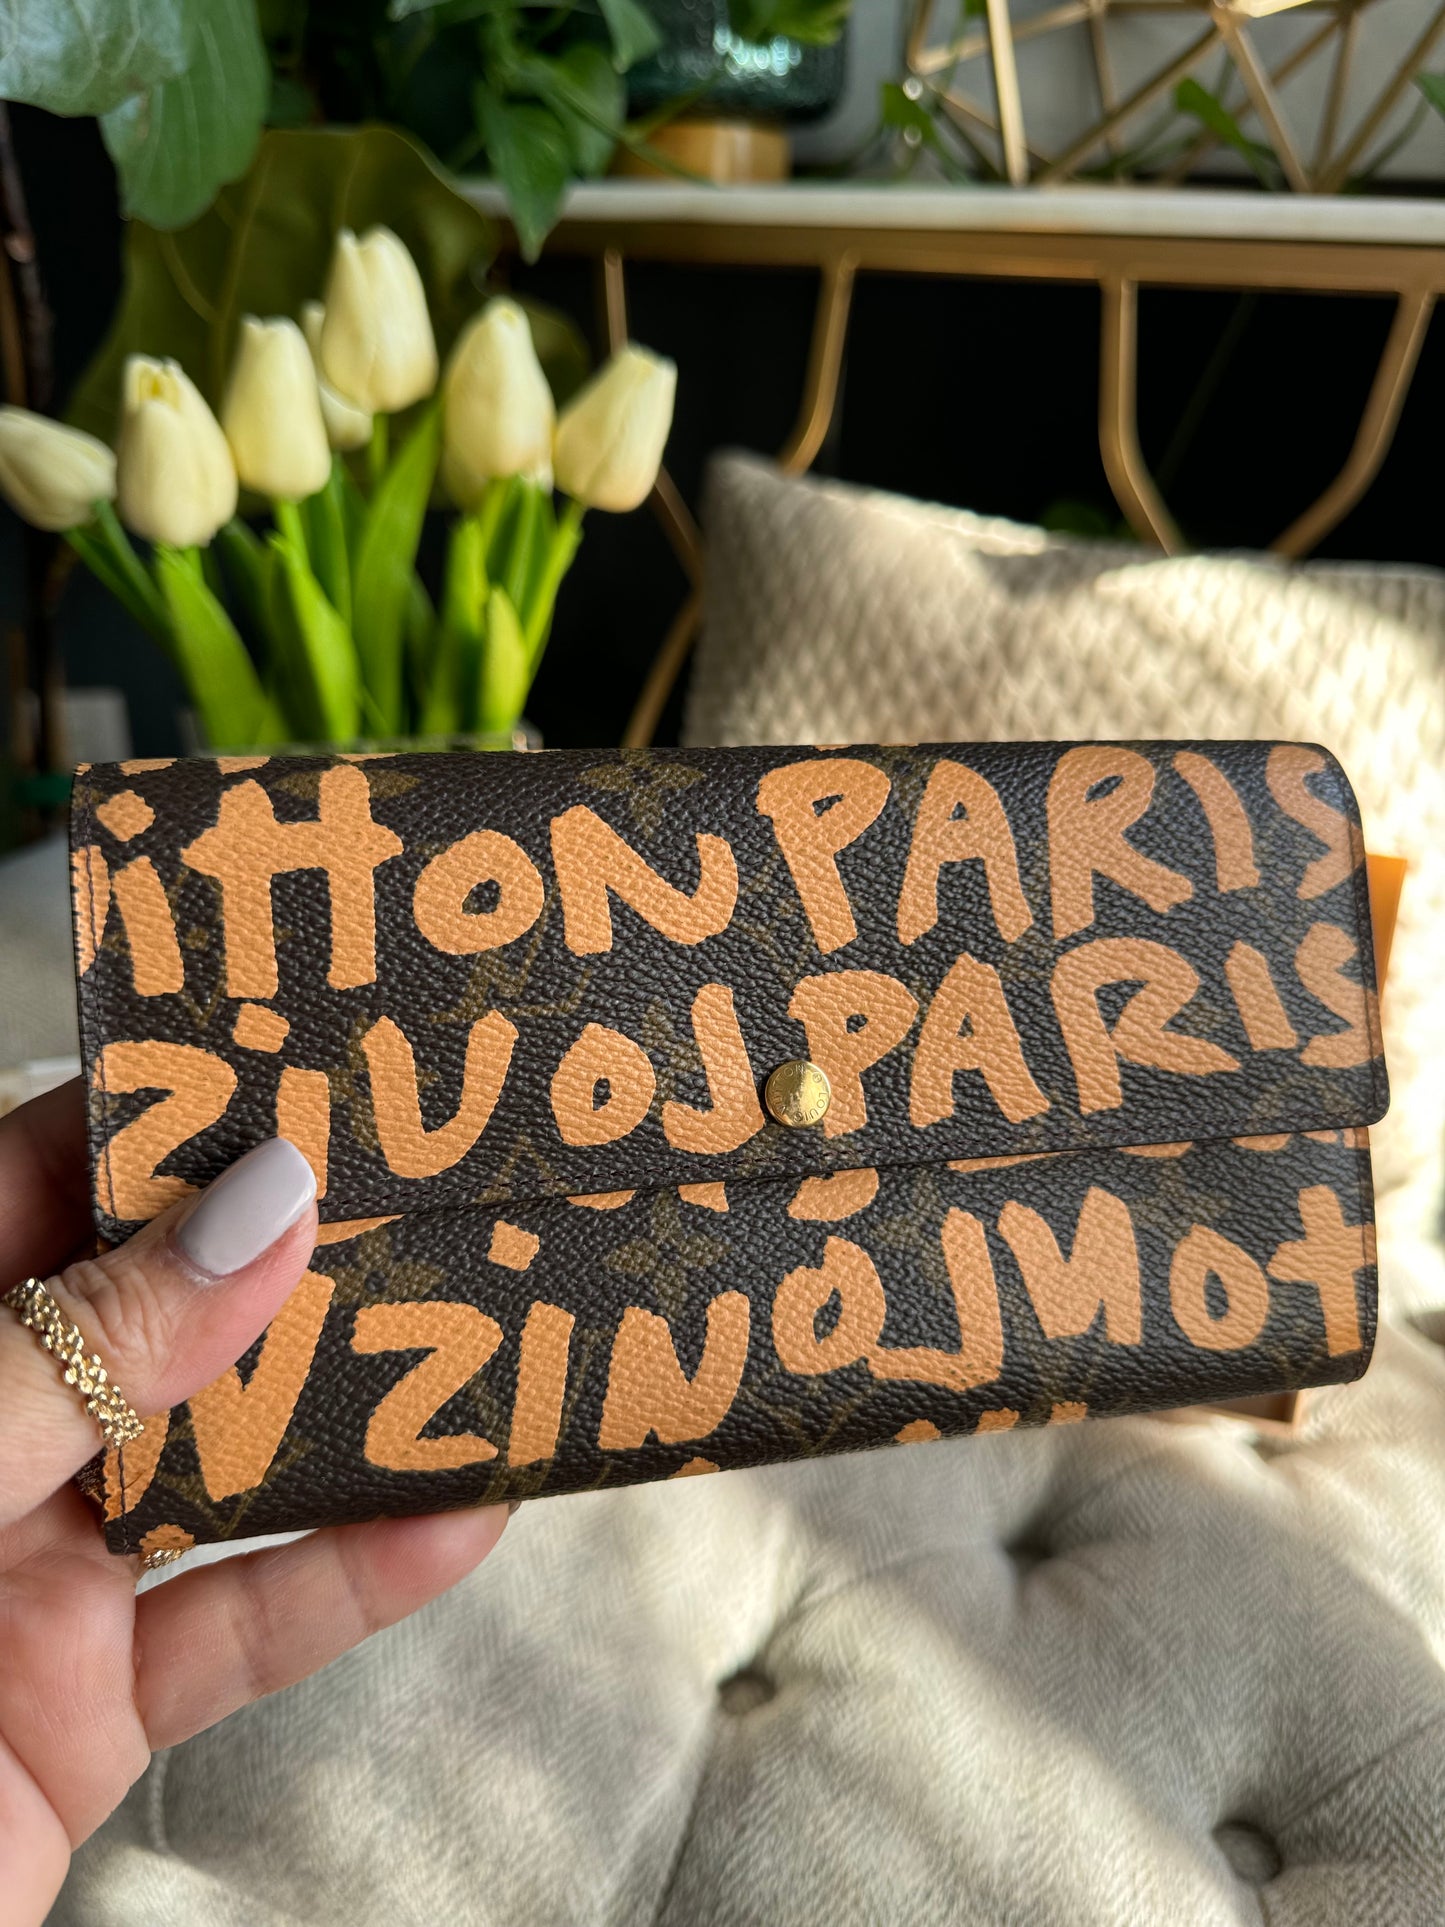 Louis Vuitton LE Stephen Sprouse Graffiti Wallet